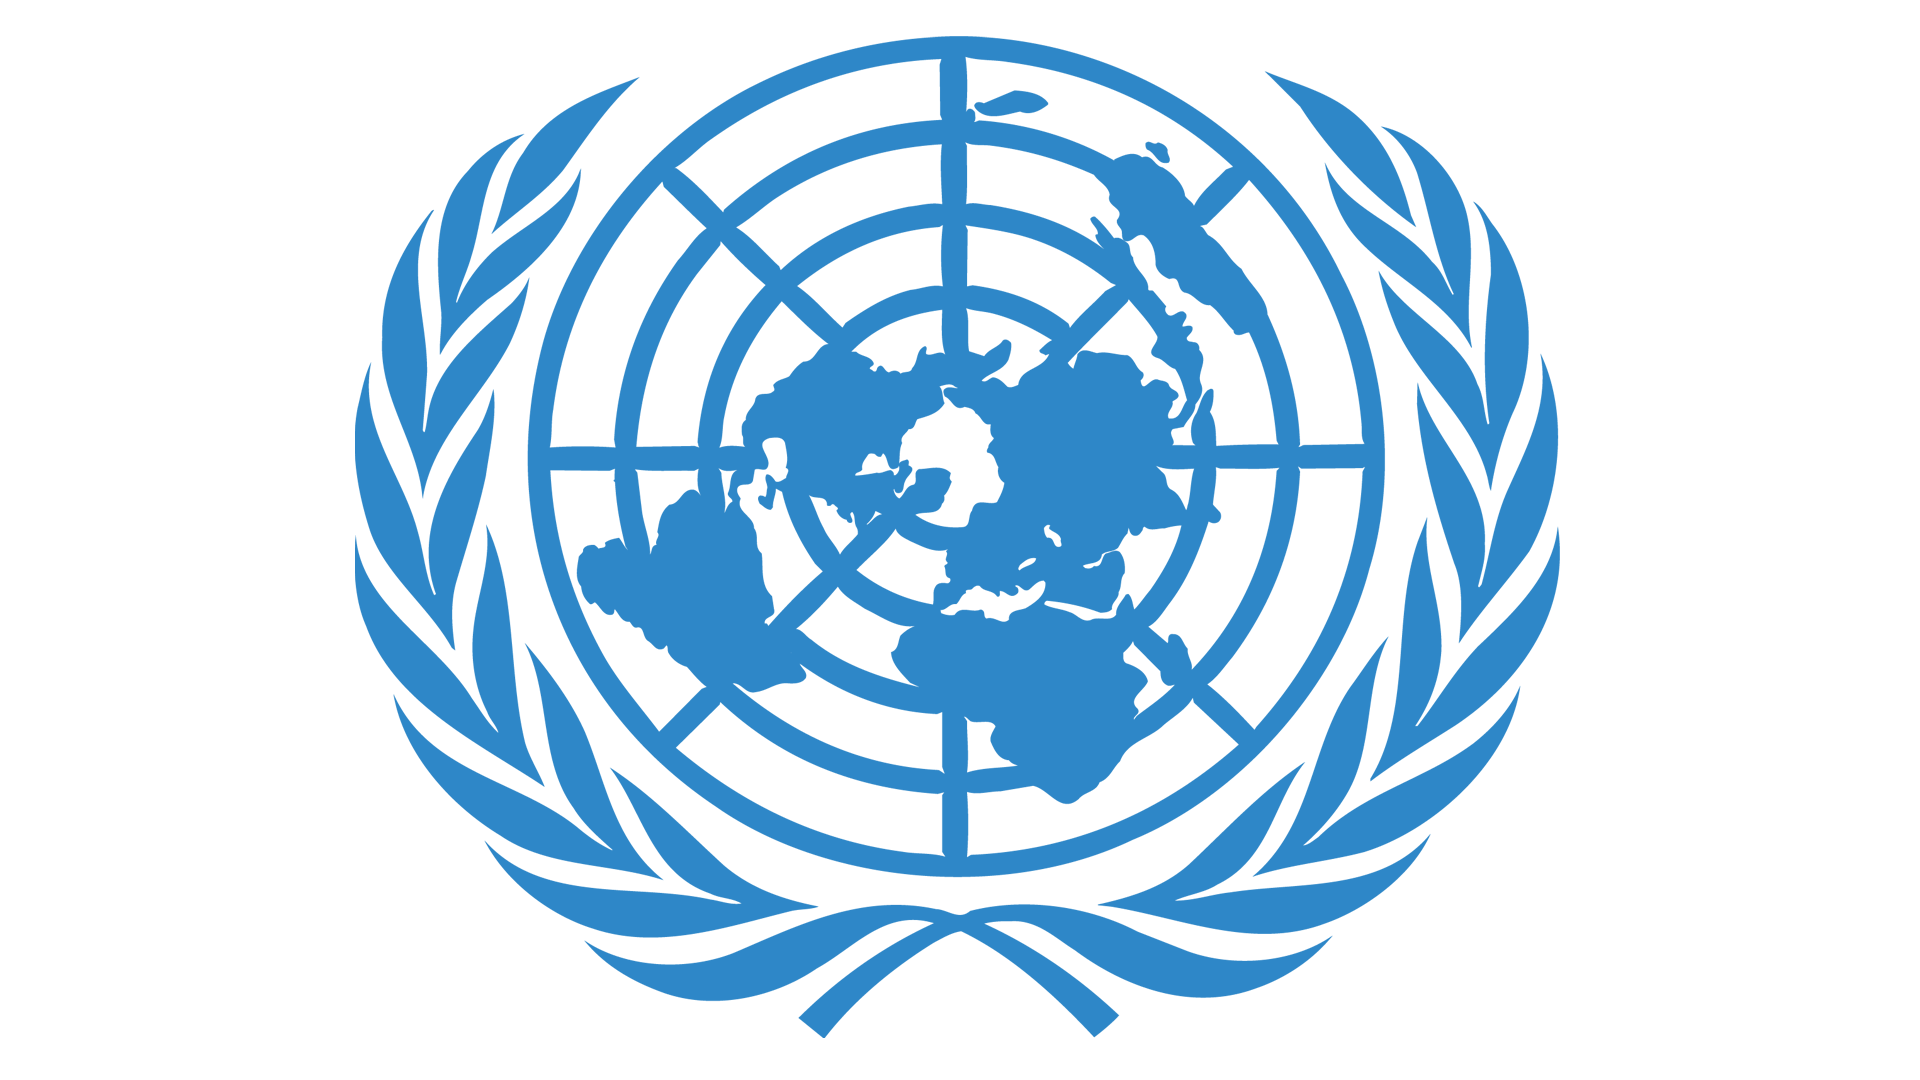 UN Myanmar 